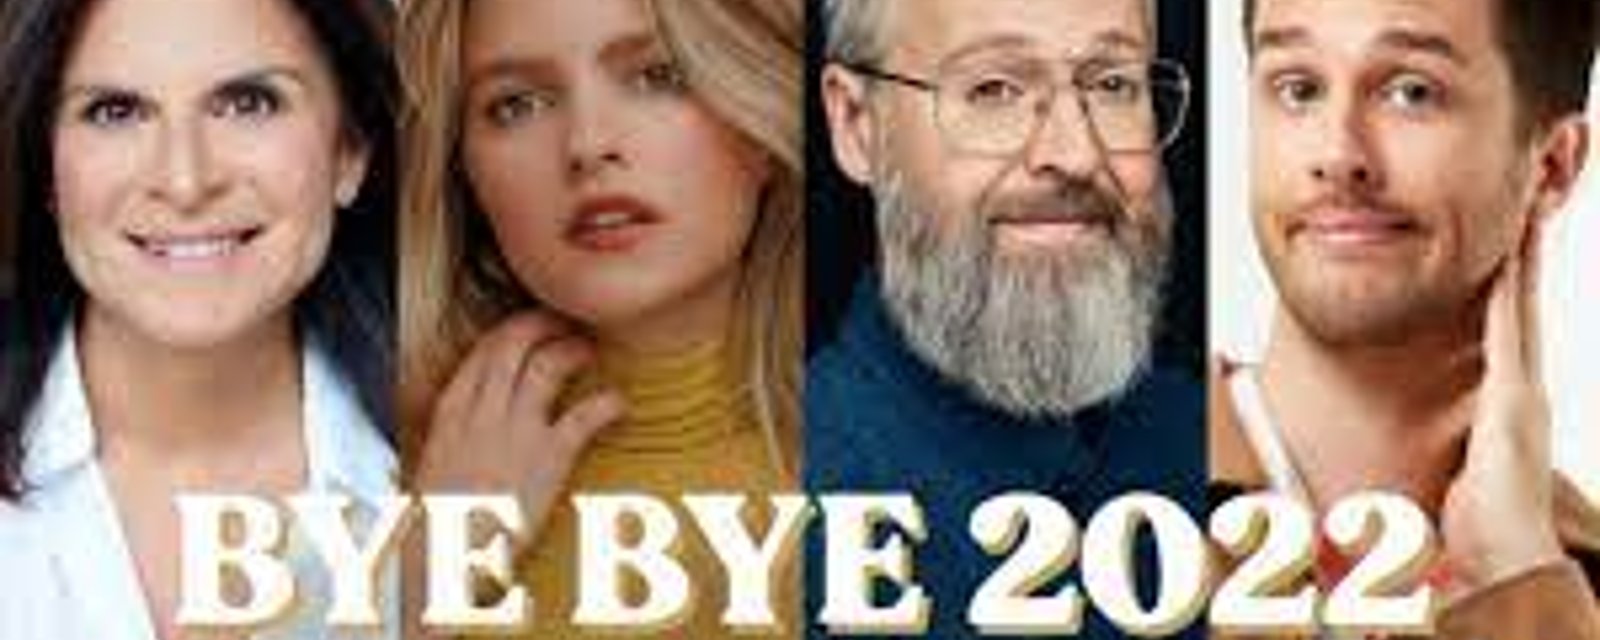 Les téléspectateurs ont fortement réagis à la diffusion du Bye Bye 2022